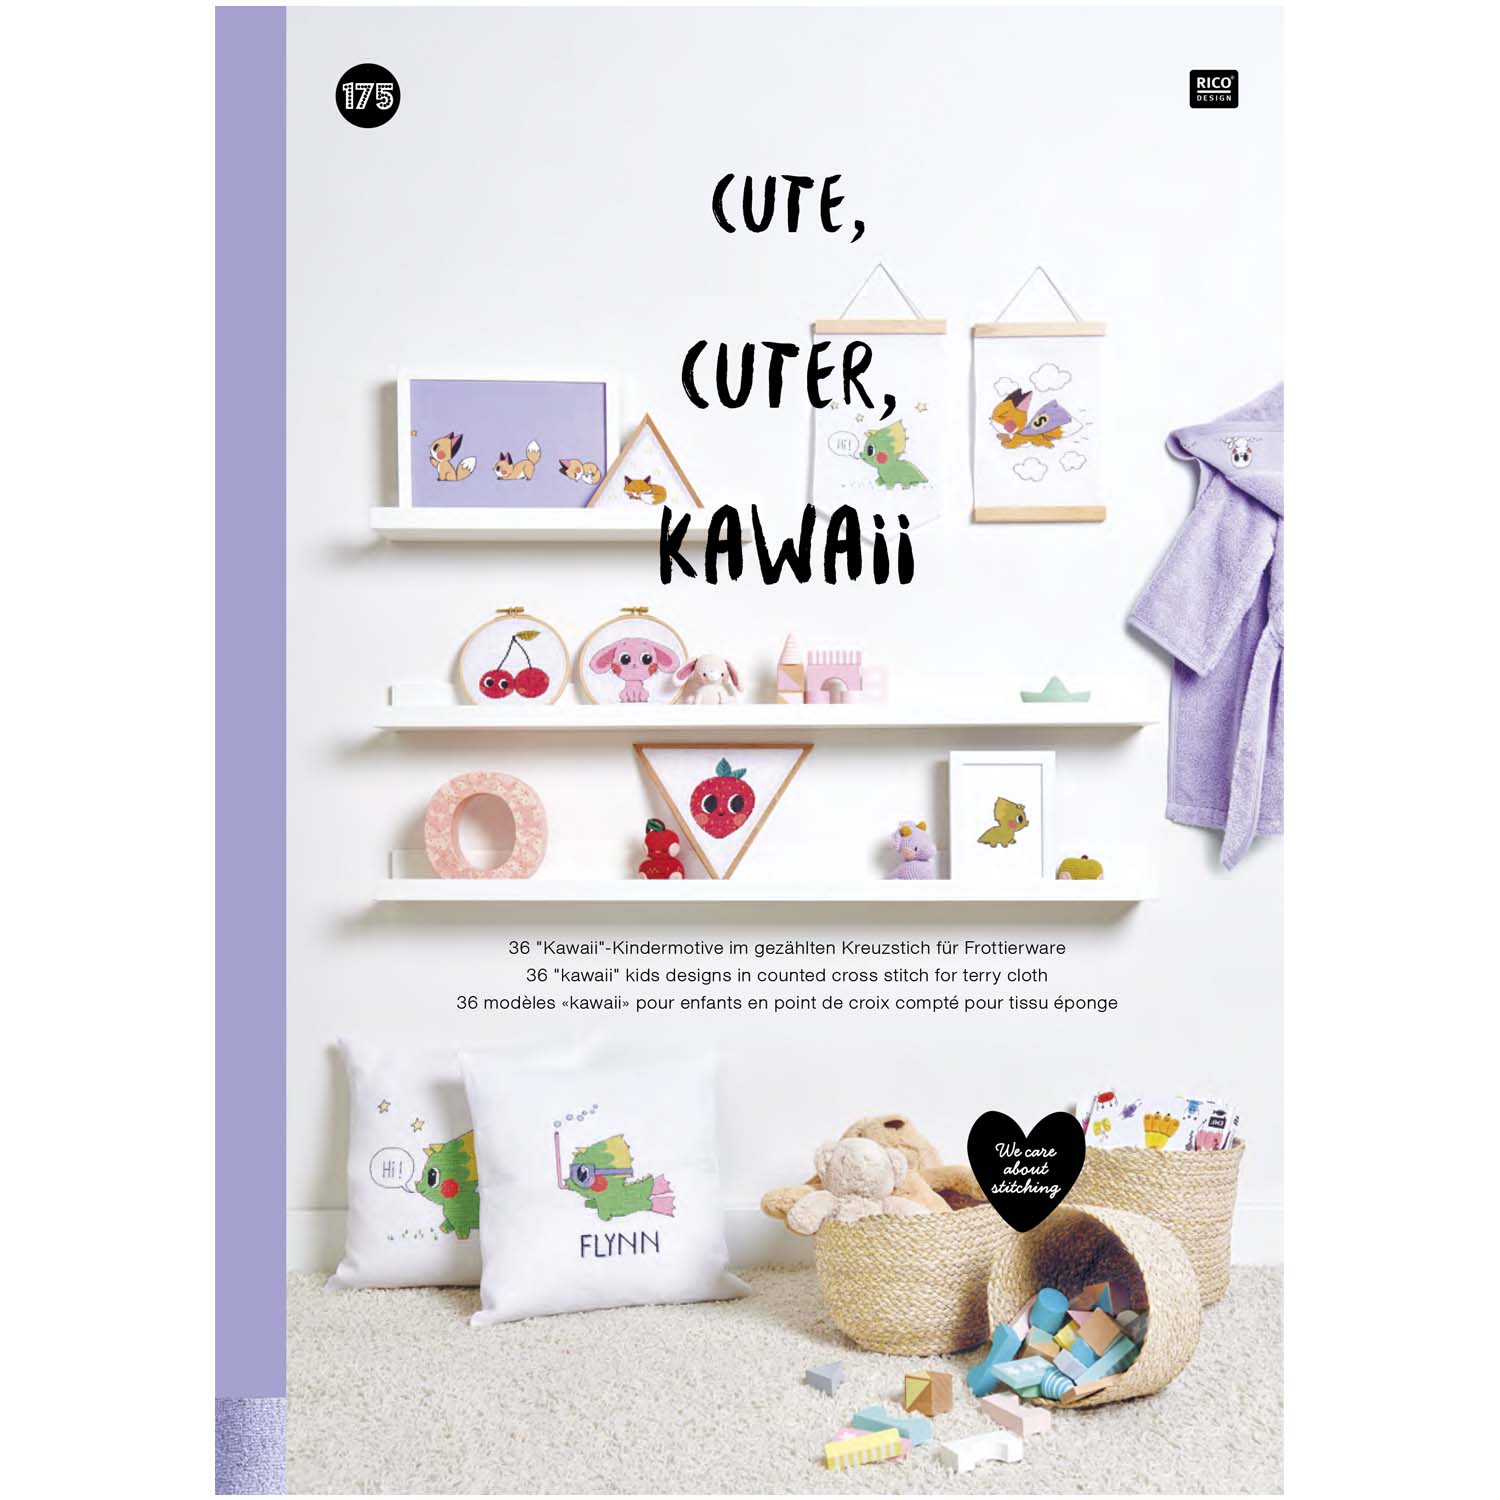 Boek Cute cuter Kawai borduurpatronen nr 175